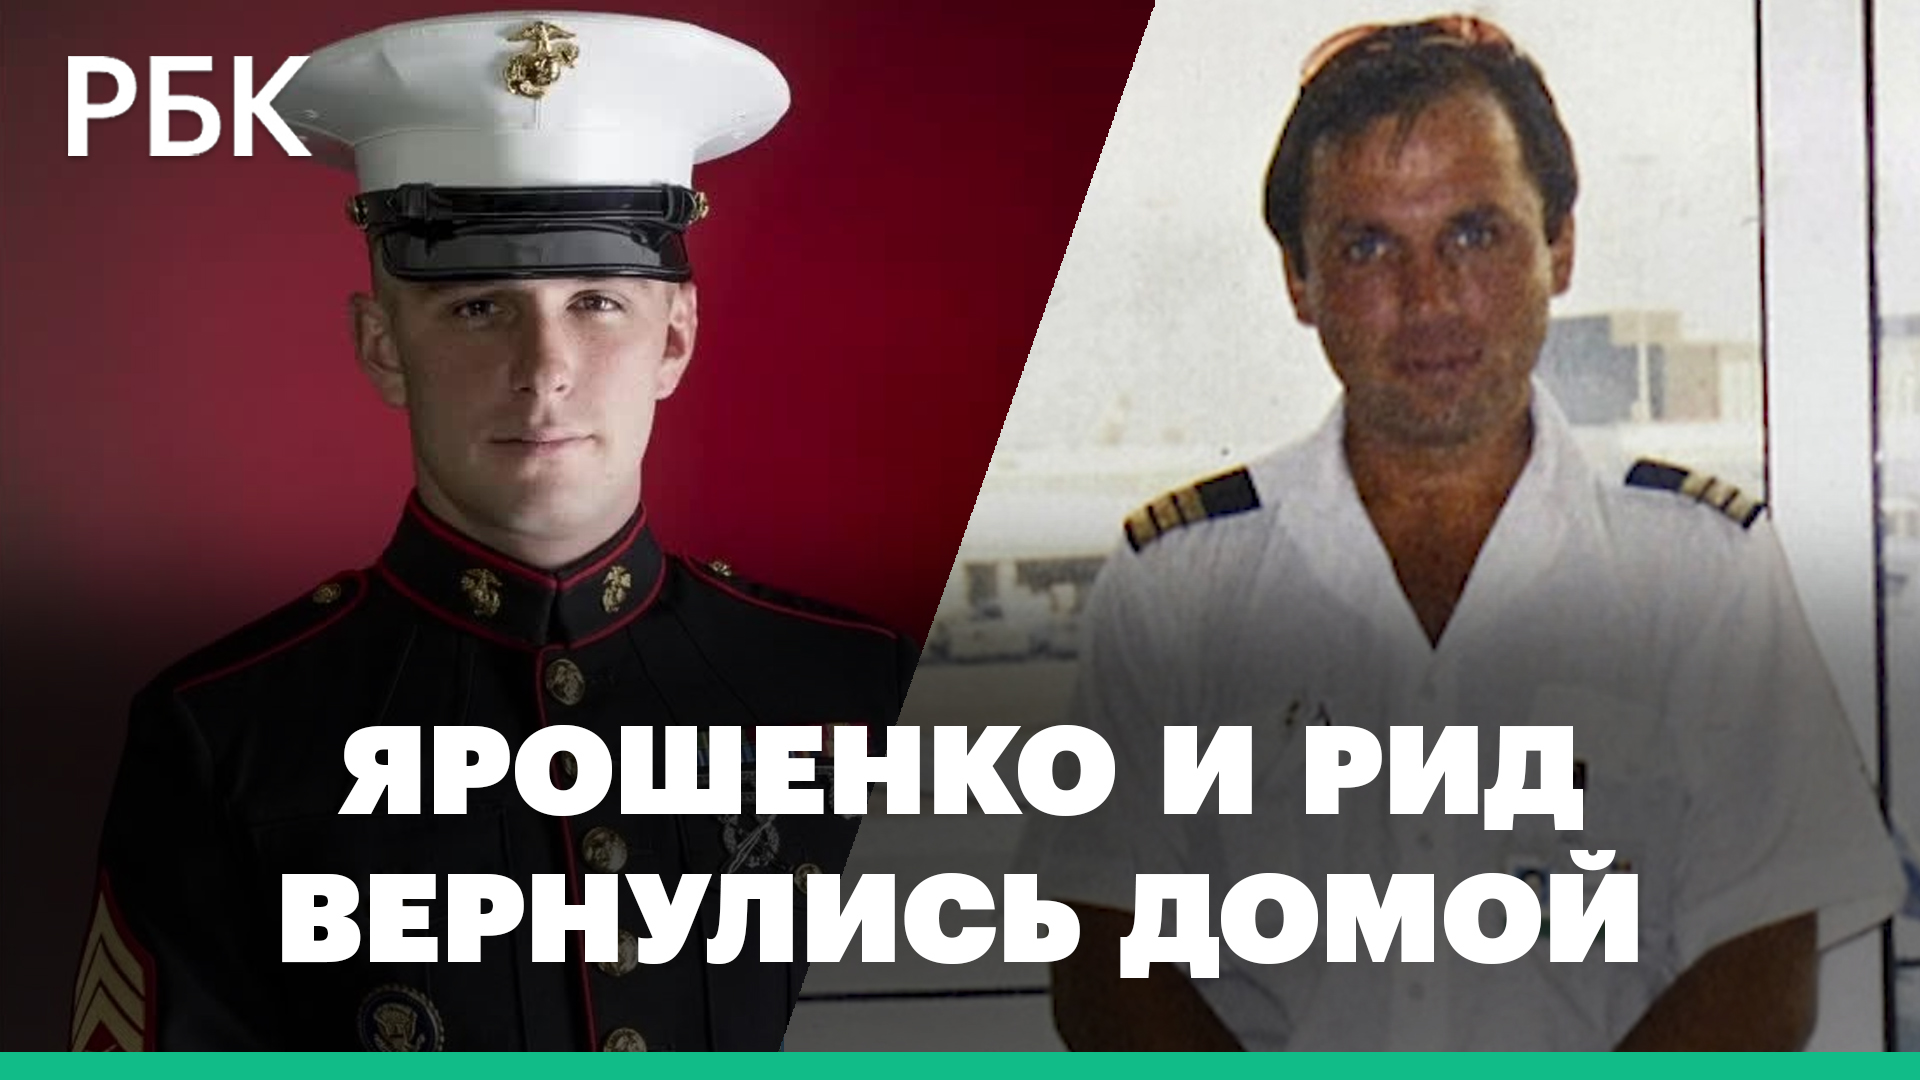 Российского летчика Ярошенко обменяли на ветерана морской пехоты США